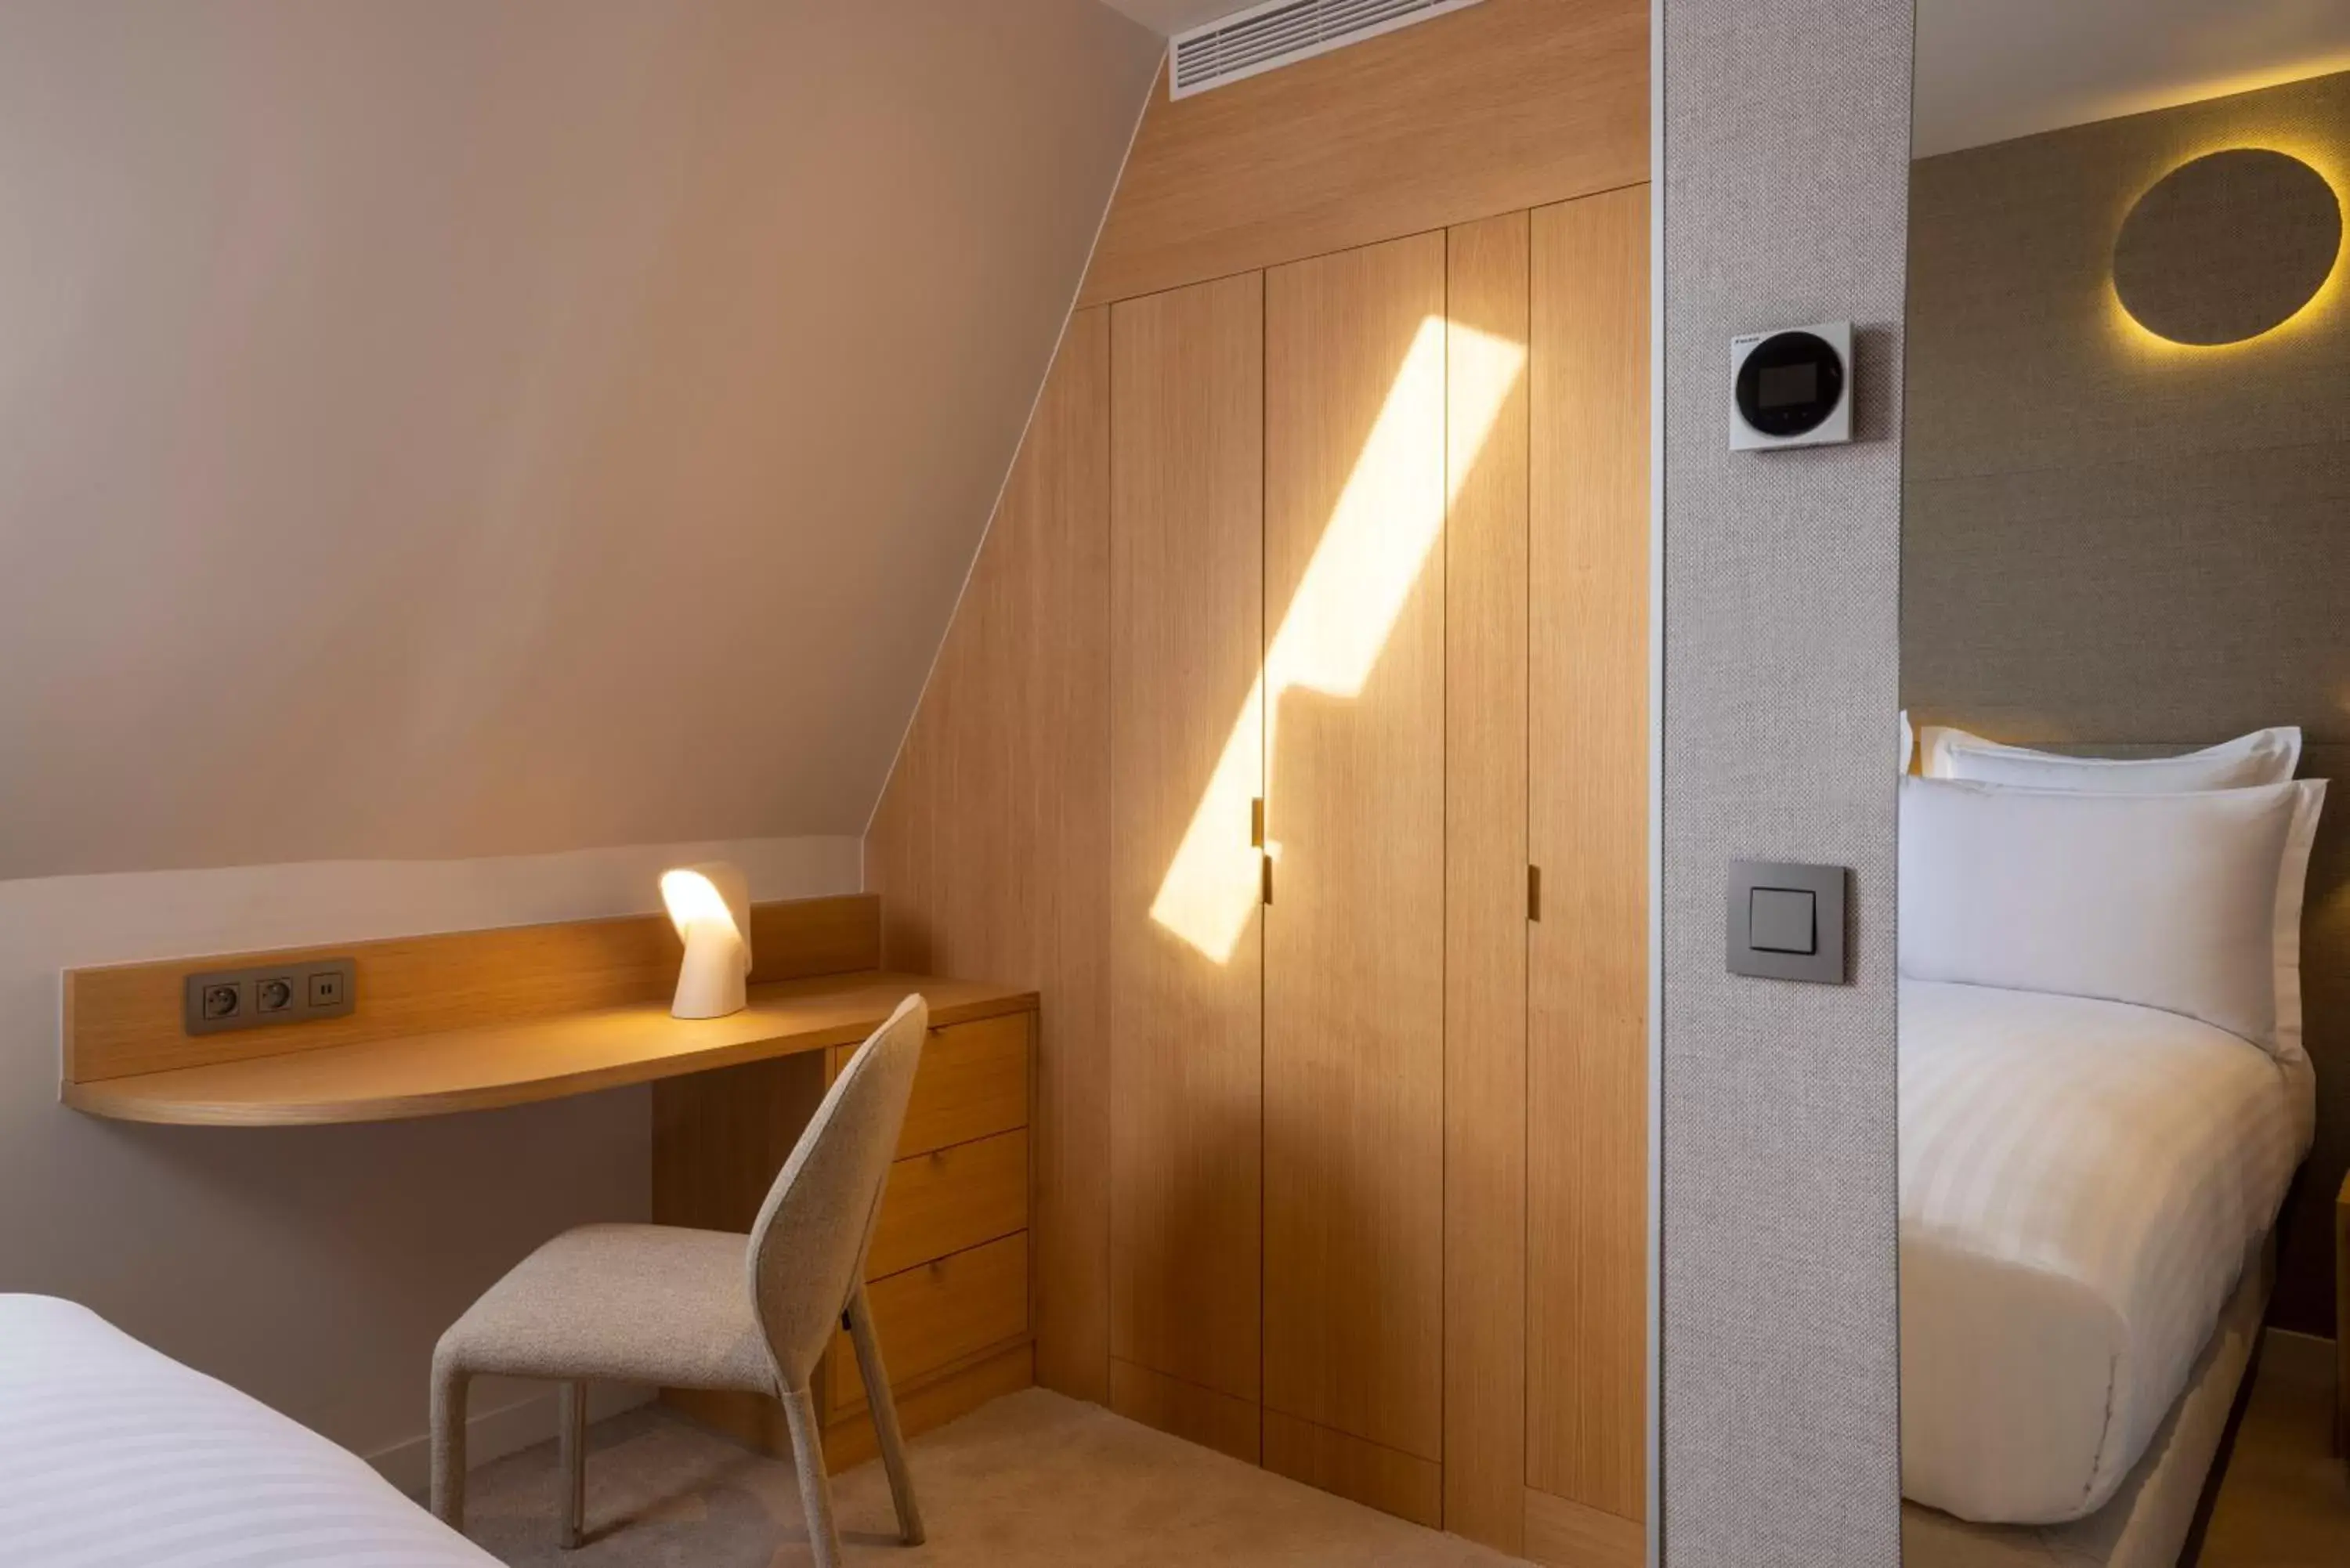 Bedroom, Bathroom in Hôtel Beige